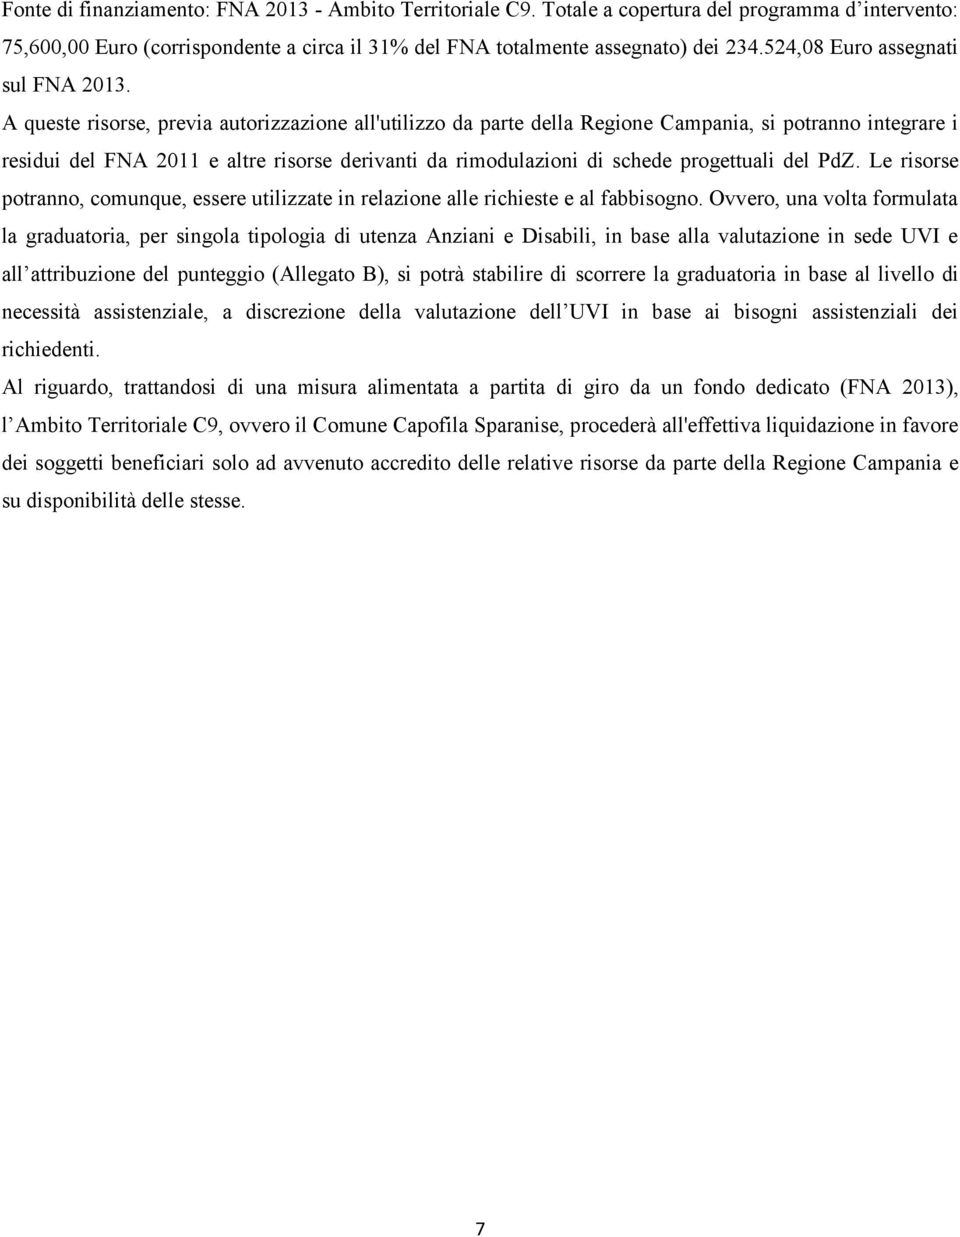 A queste risorse, previa autorizzazione all'utilizzo da parte della Regione Campania, si potranno integrare i residui del FNA 2011 e altre risorse derivanti da rimodulazioni di schede progettuali del